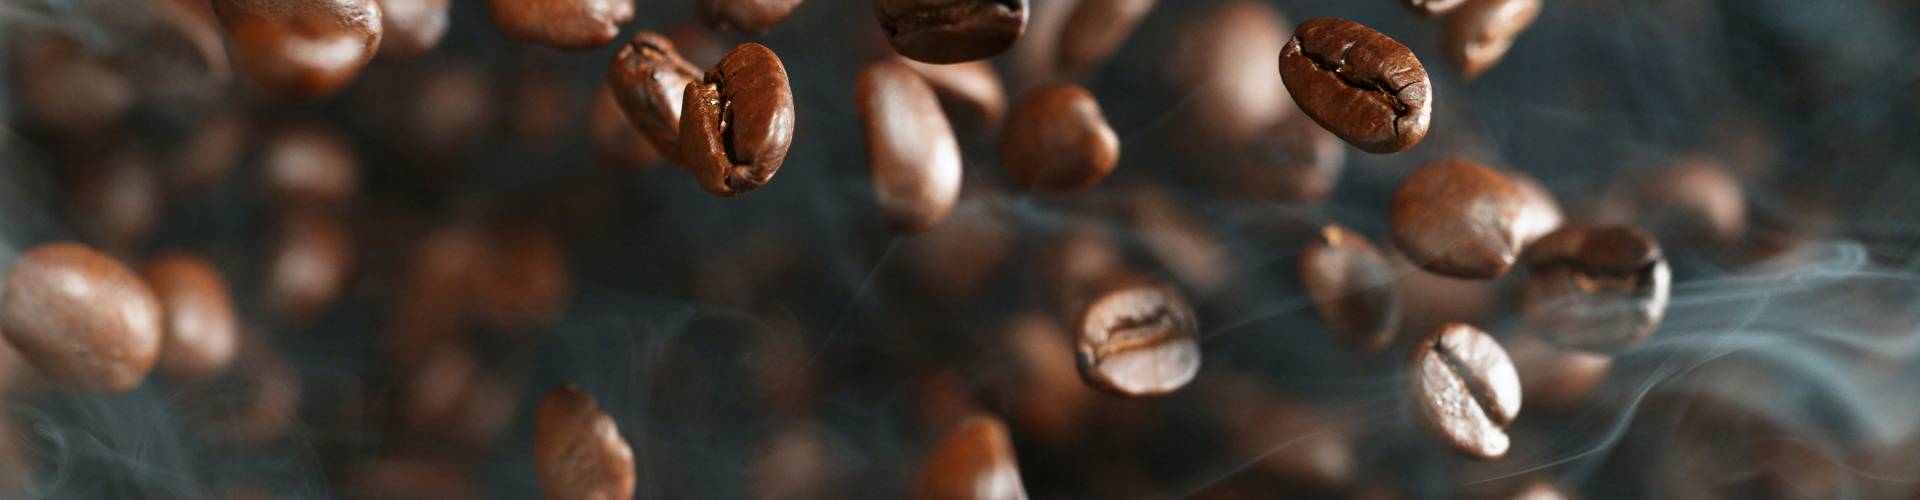 La cultura del café en Australia